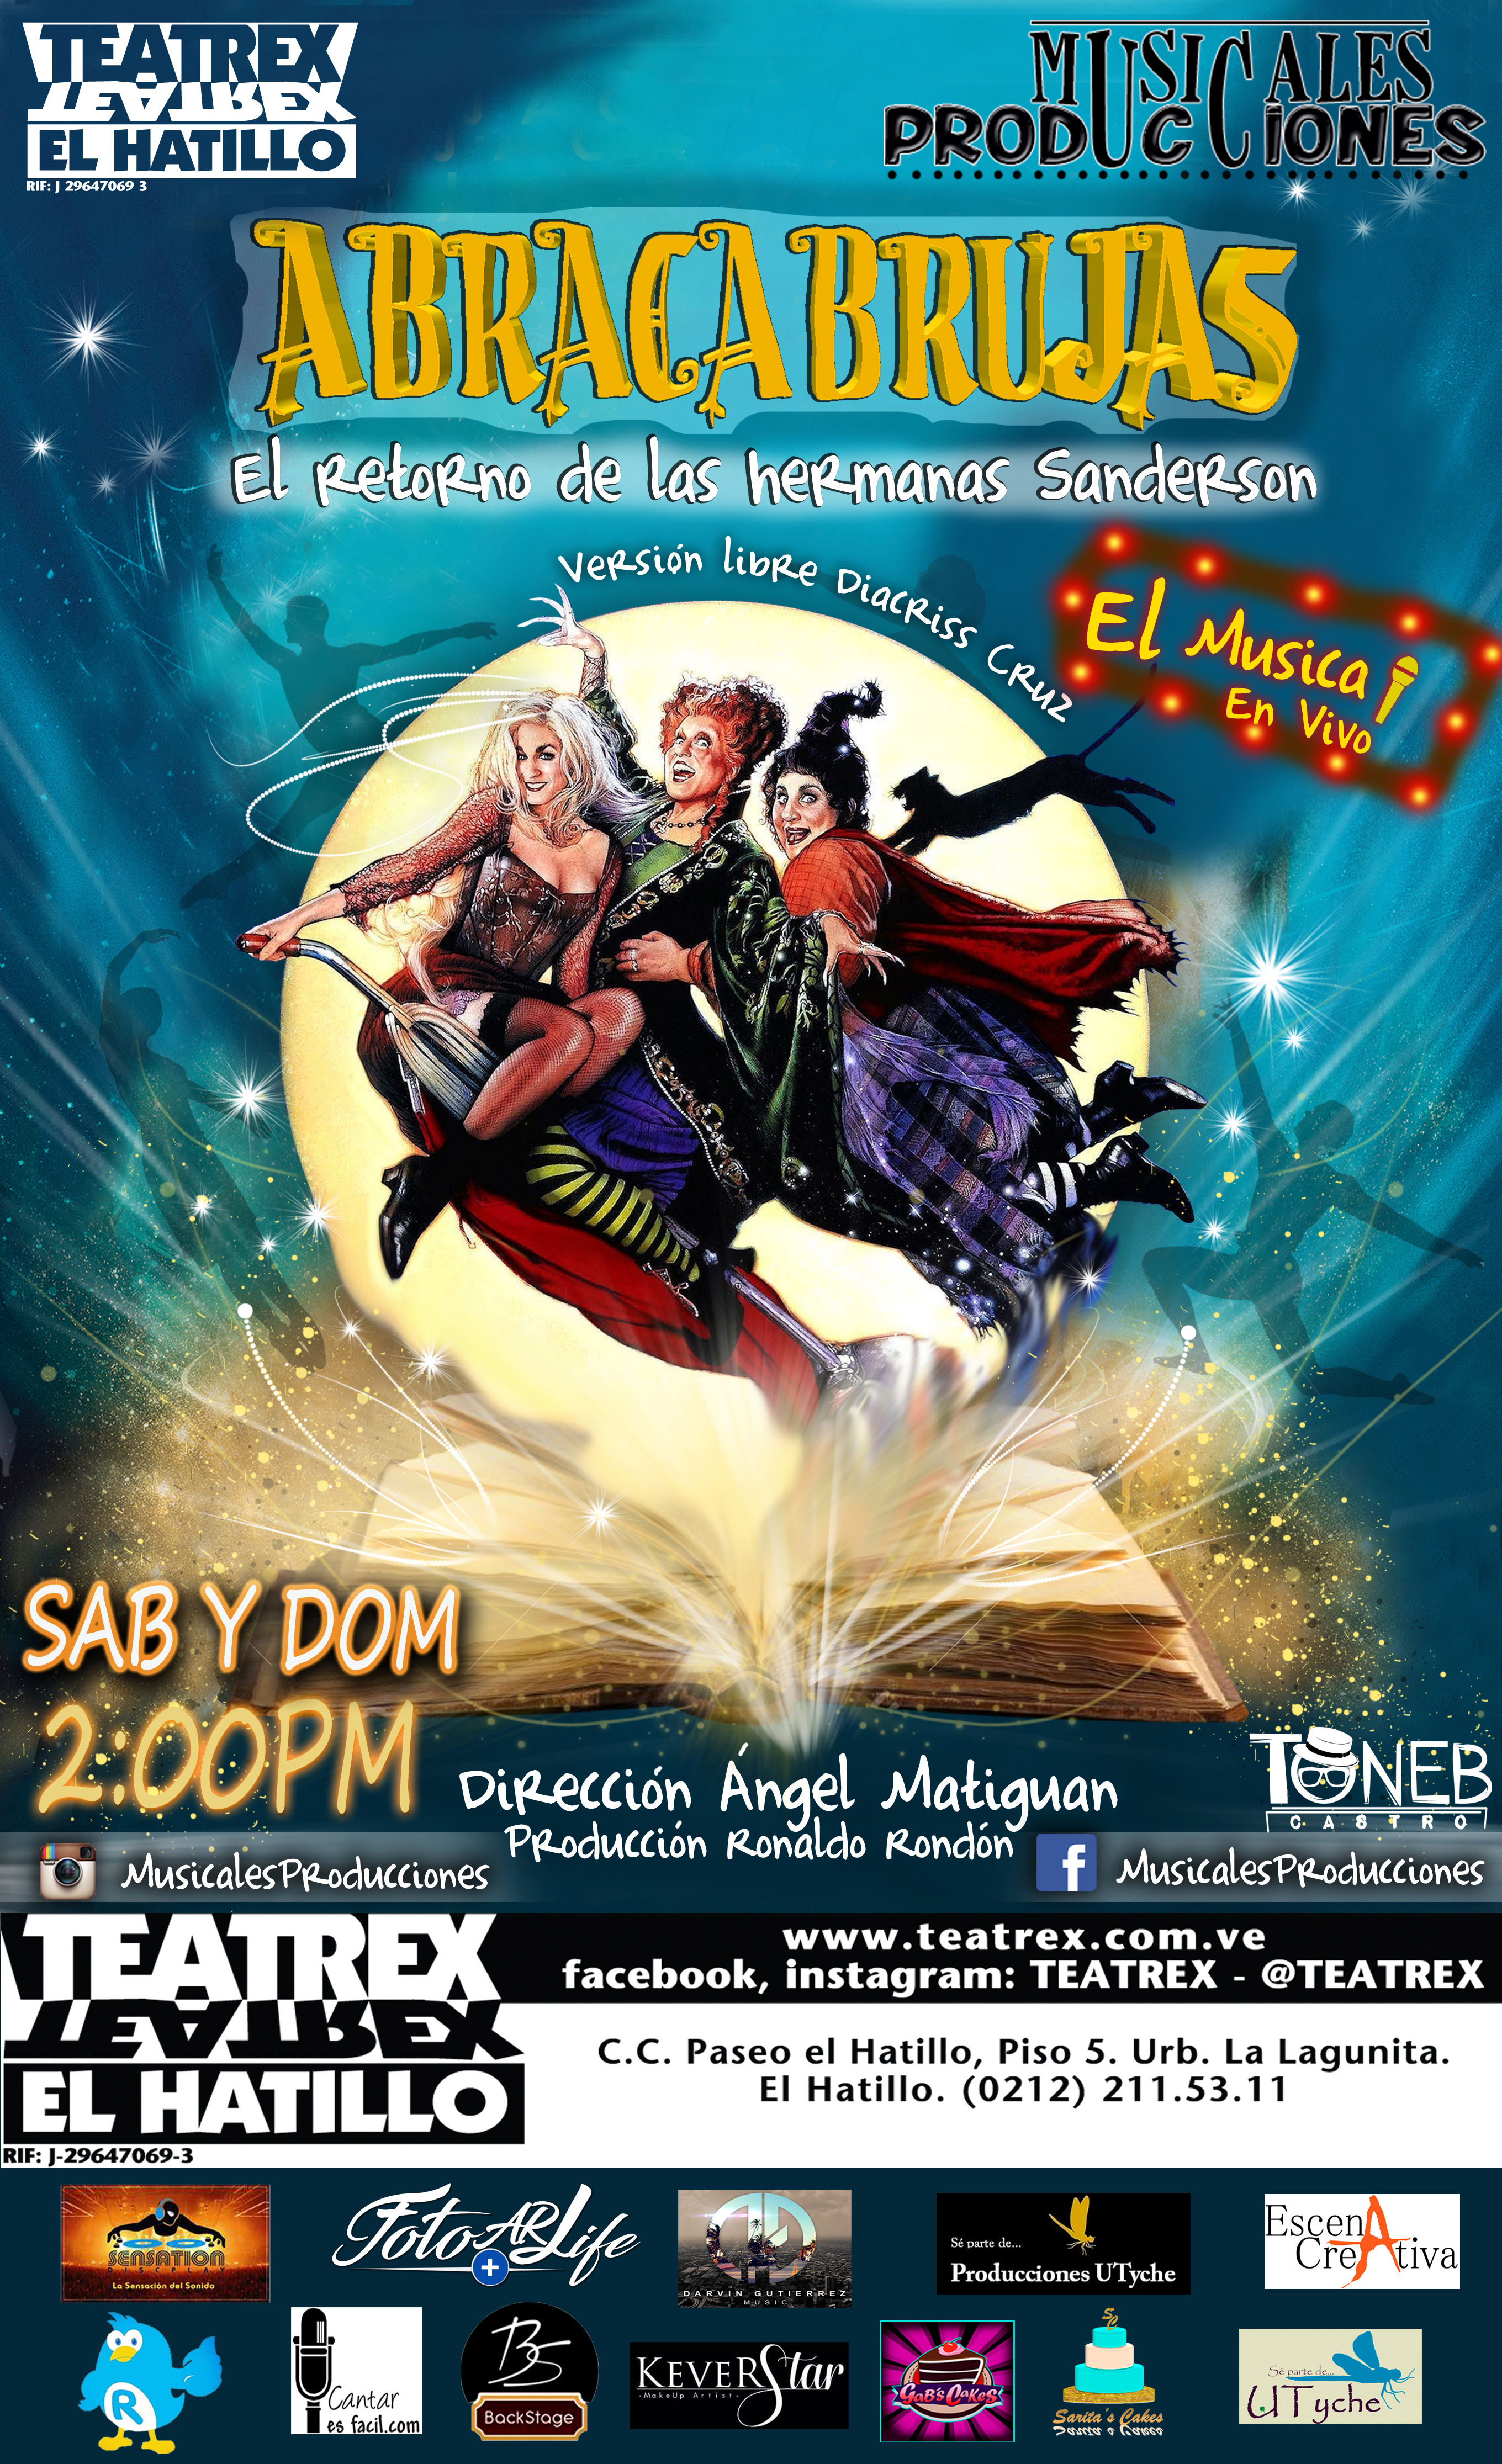 Arte Teatrex El Hatillo -Abracabrujas El Musical